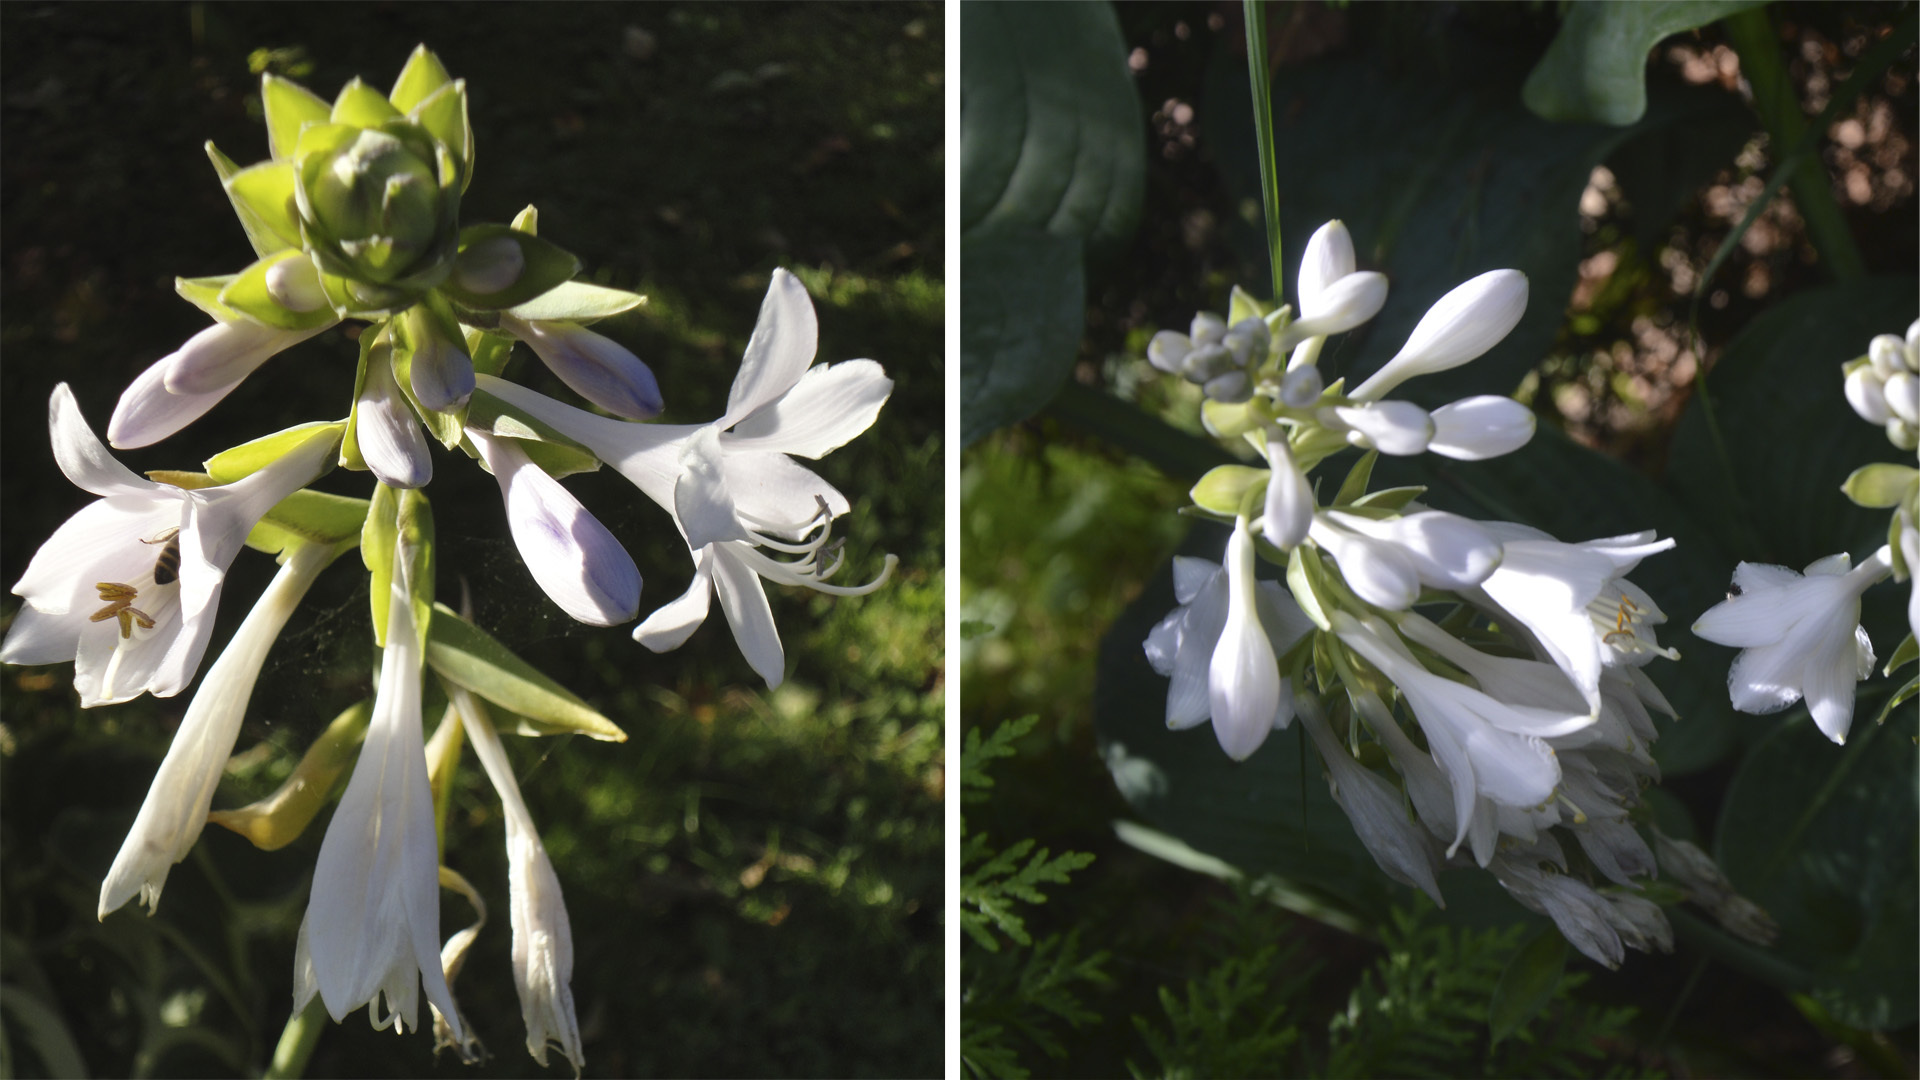 Ароматные цветки 'Kiwi Full Monty' словно маленькие лилии (слева), цветки 'Elegance' похожи на гиацинт. Фото 